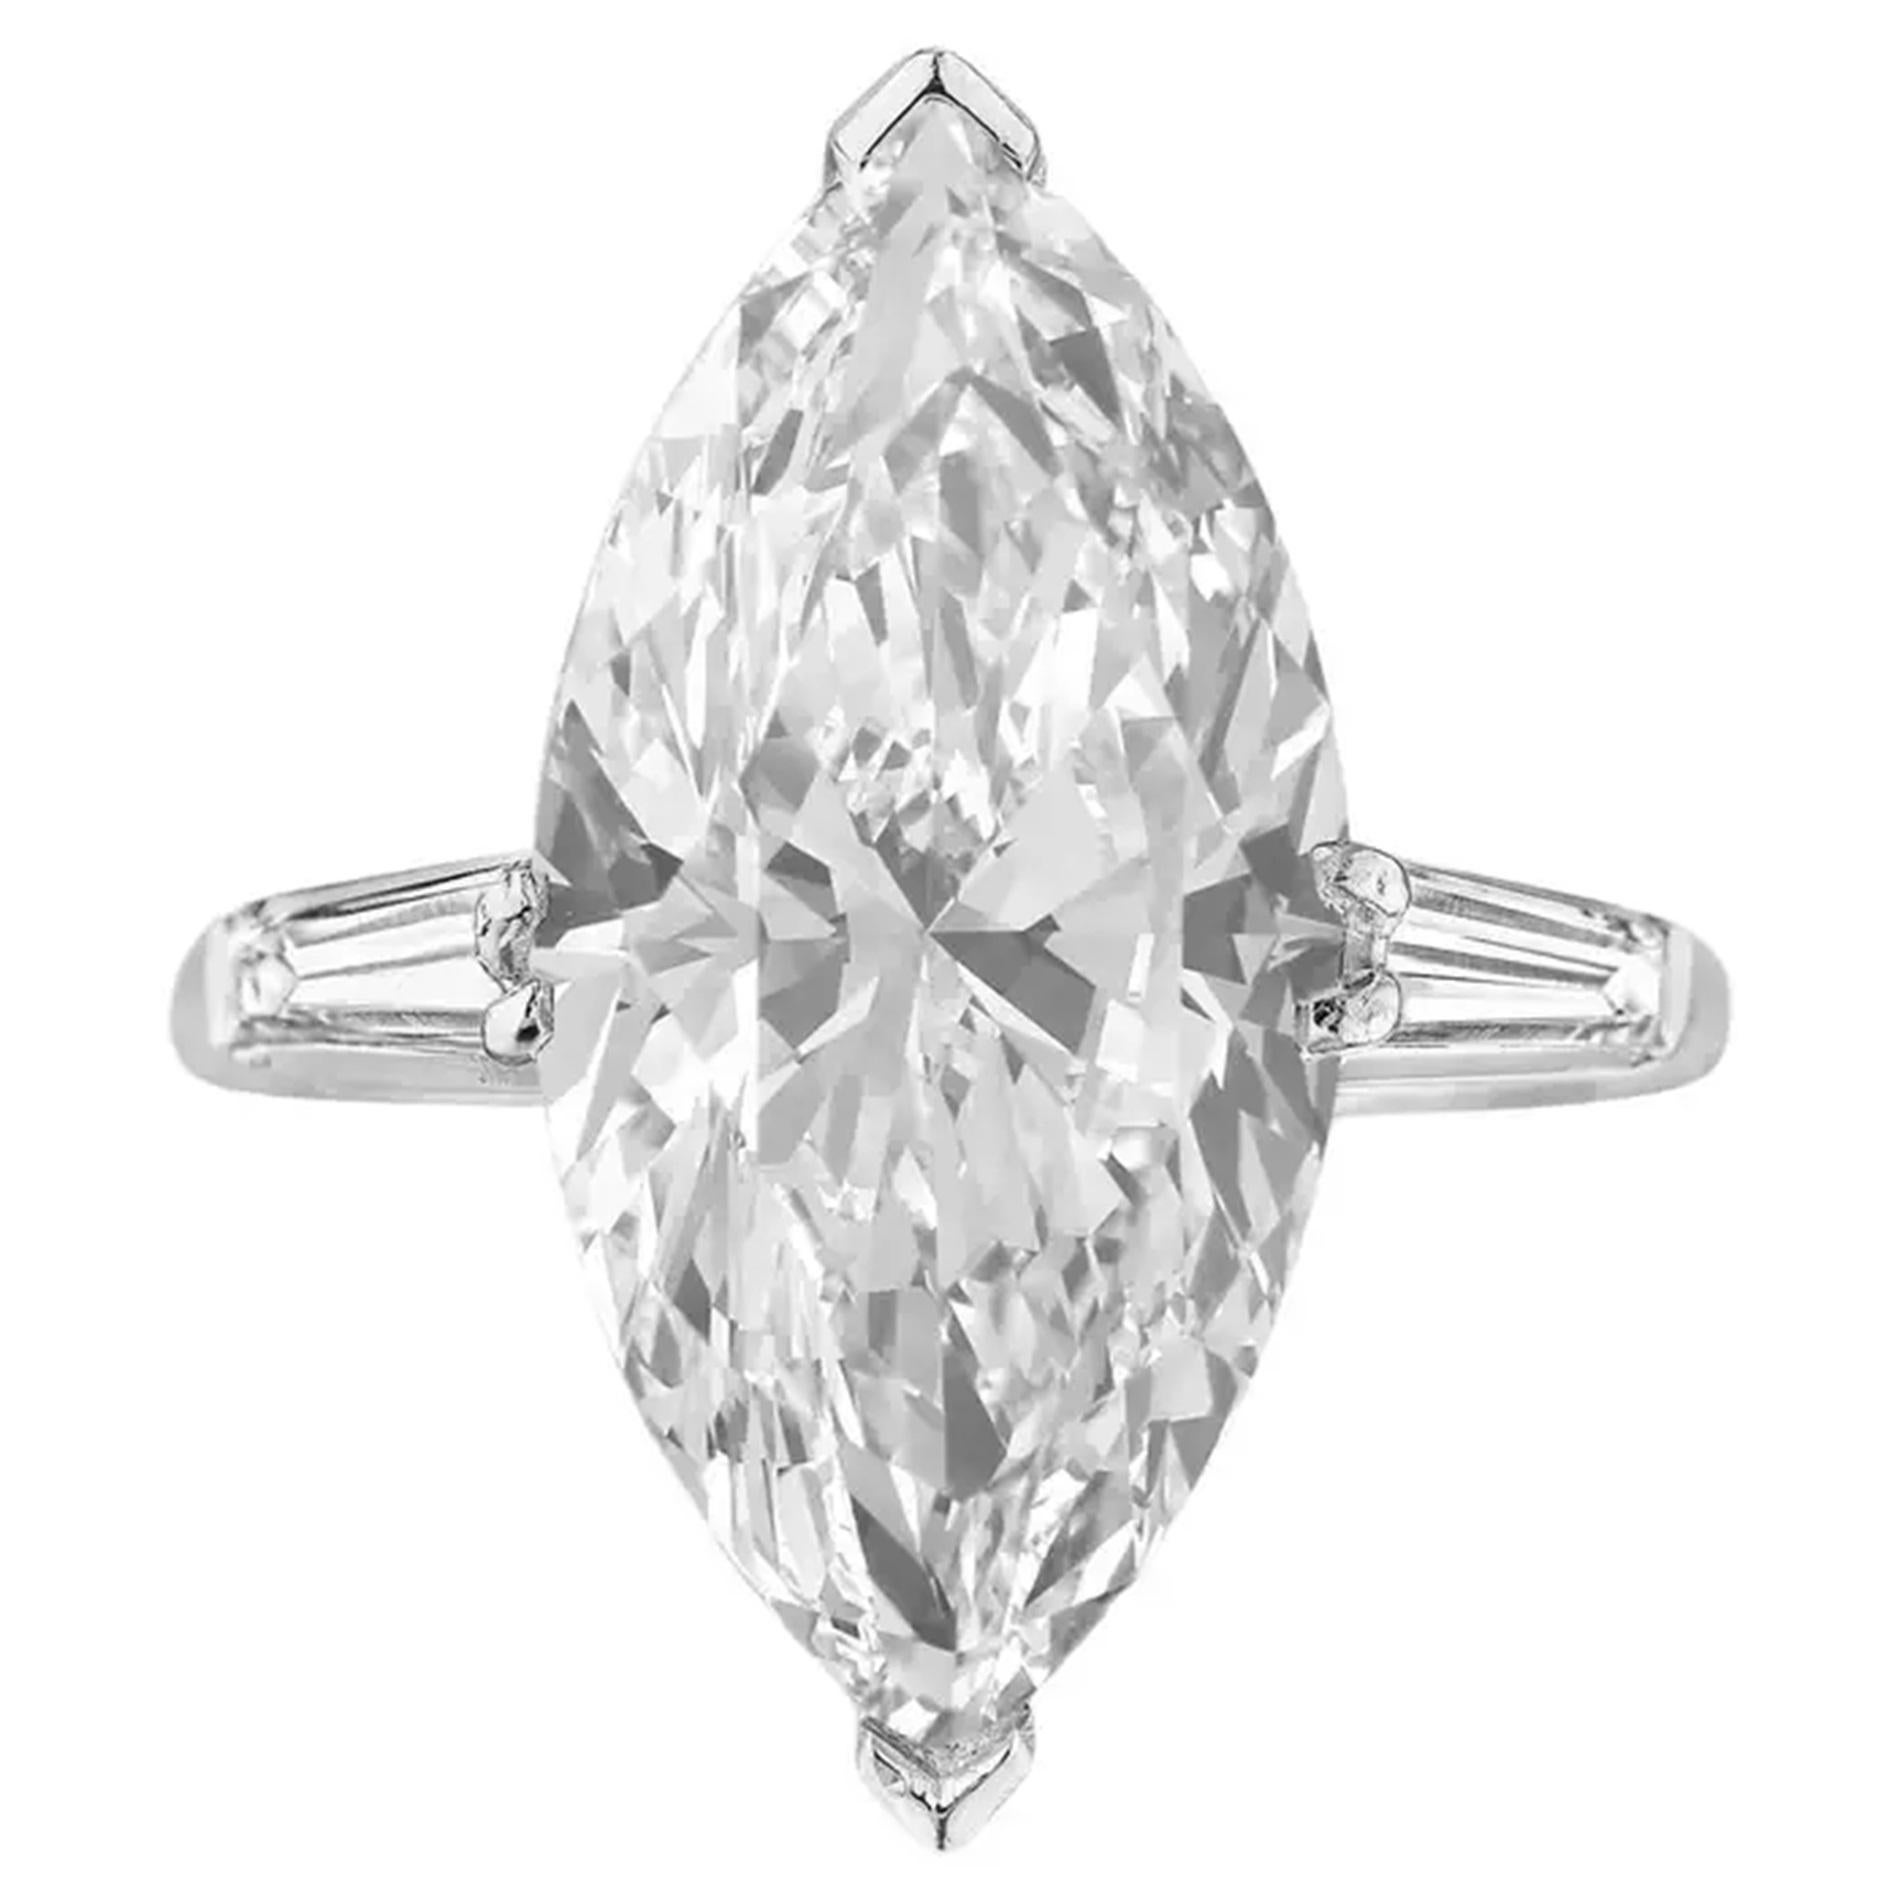 Presentamos el Excepcional Anillo de Diamante Marquesa Certificado por el GIA de 6,06 quilates, con un impresionante diamante de 6 quilates con una proporción más larga que realza su grácil aspecto. Esta extraordinaria gema está adornada con un